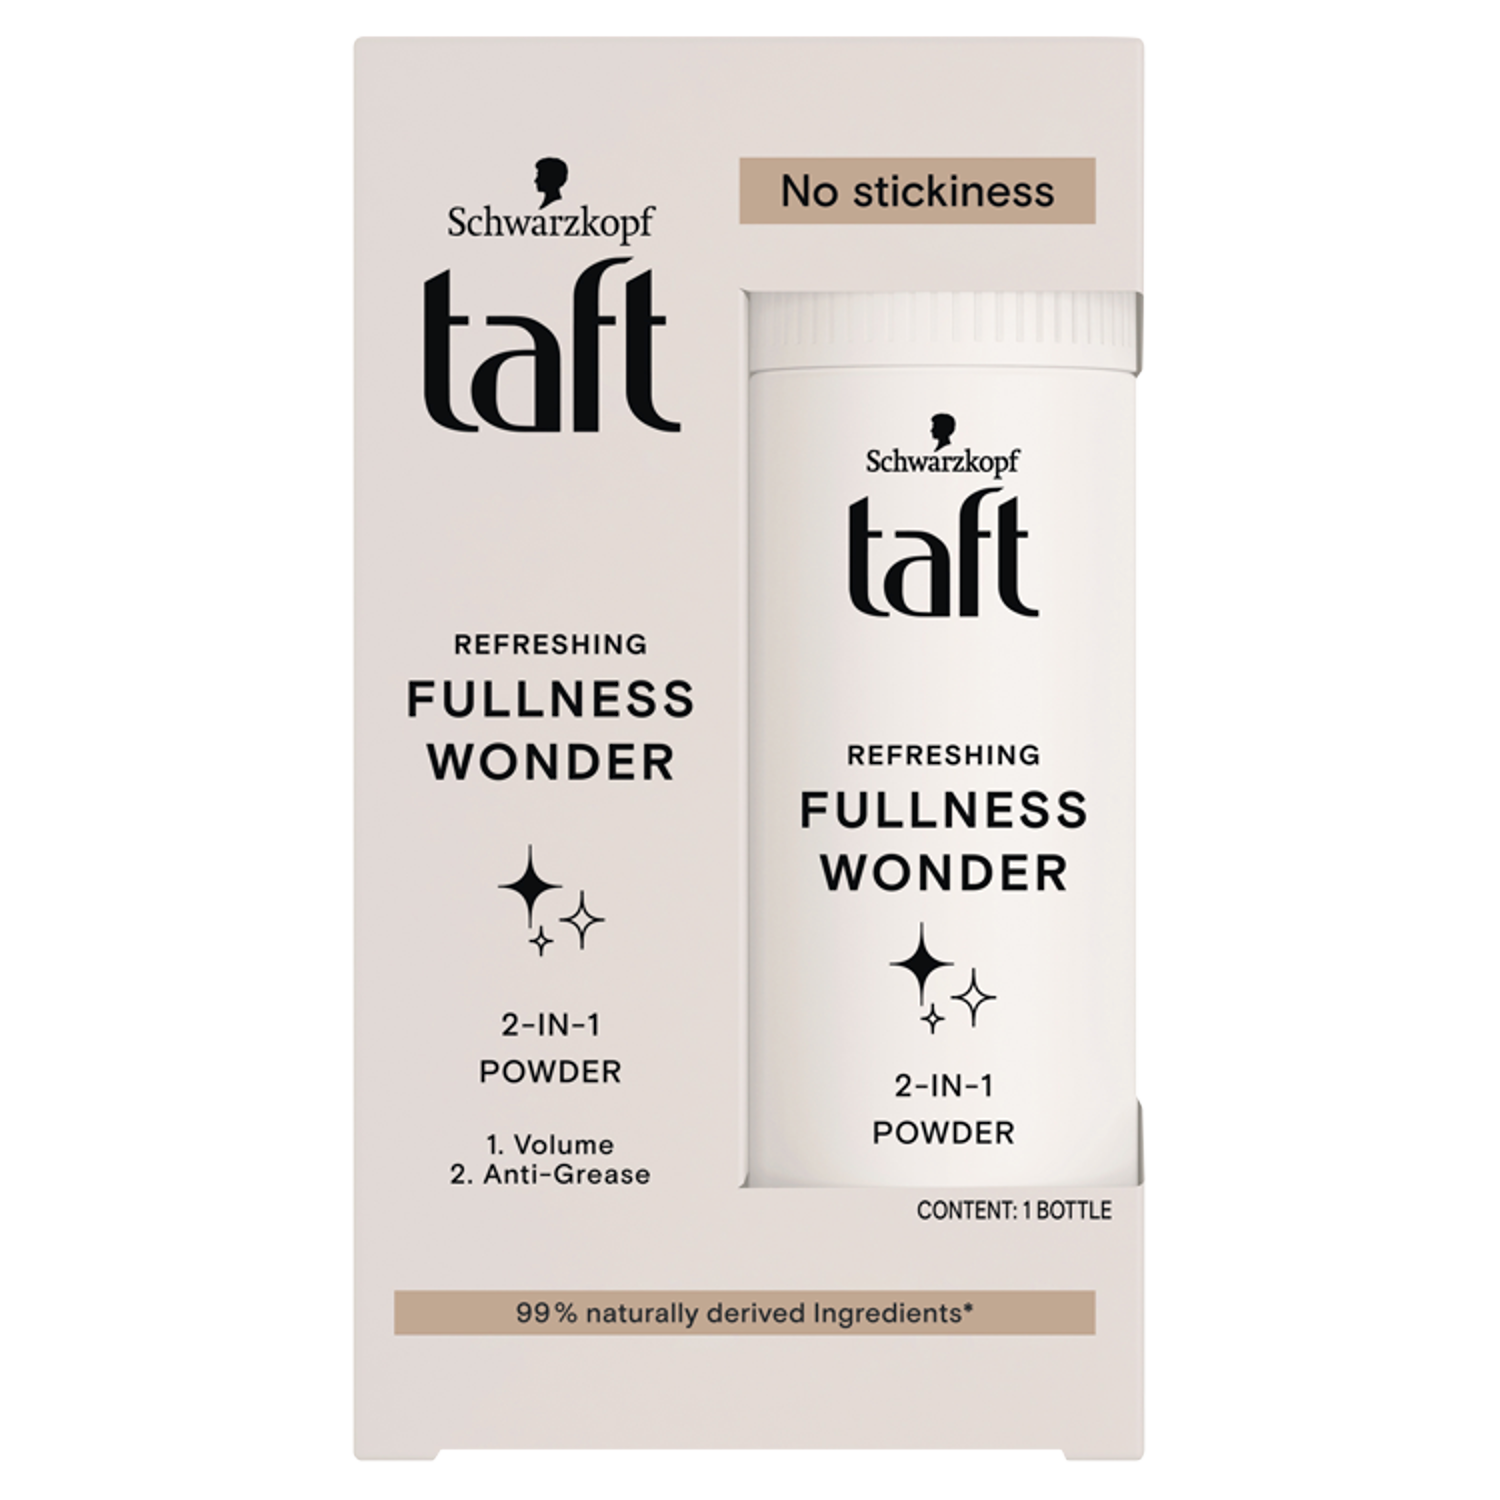 Порошок для завивки Taft Fullnees Wonder, 10 гр порошок для завивки taft fullnees wonder 10 гр